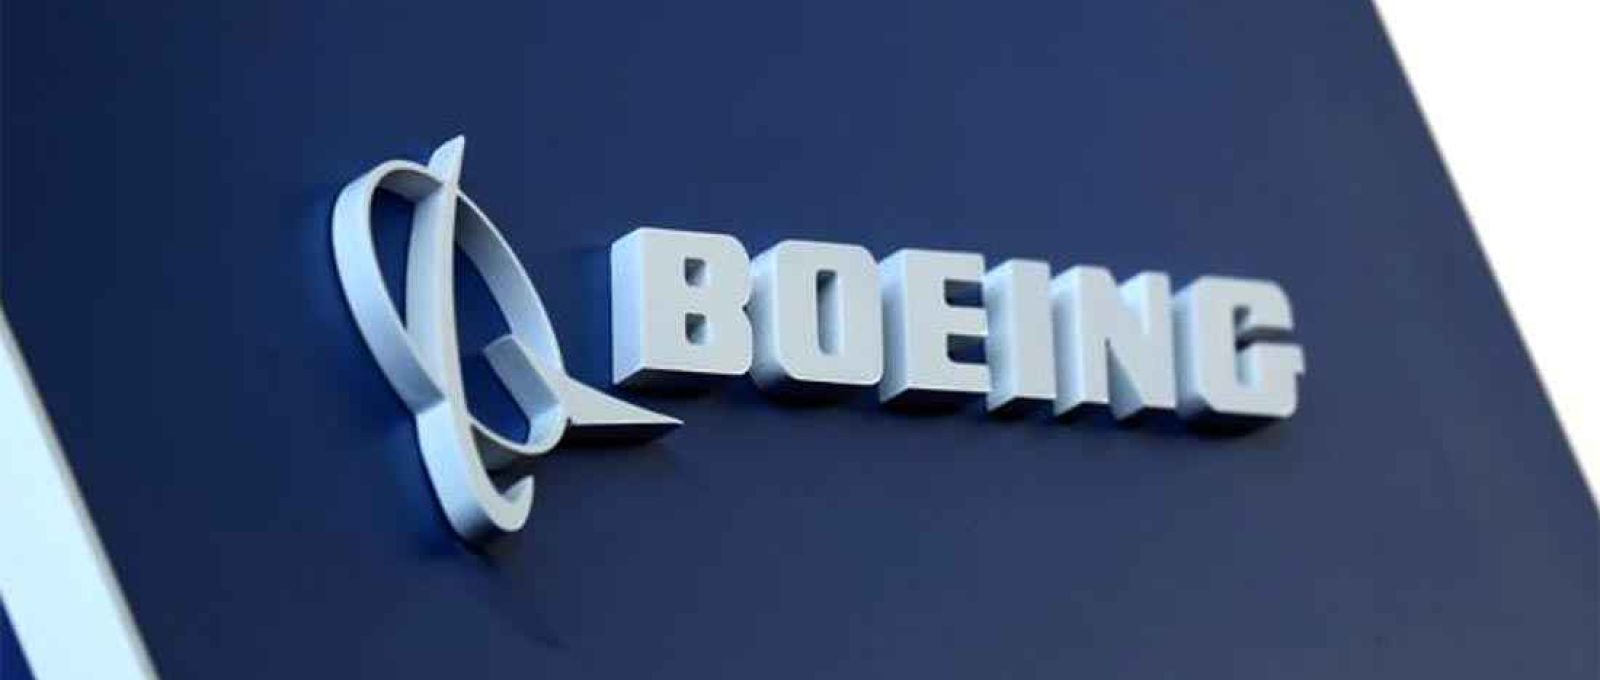 O logotipo da Boeing retratado na feira Latin American Business Aviation Conference & Exhibition (LABACE) no Aeroporto de Congonhas em São Paulo, Brasil, 14 de agosto de 2018 (Paulo Whitaker/Reuters).